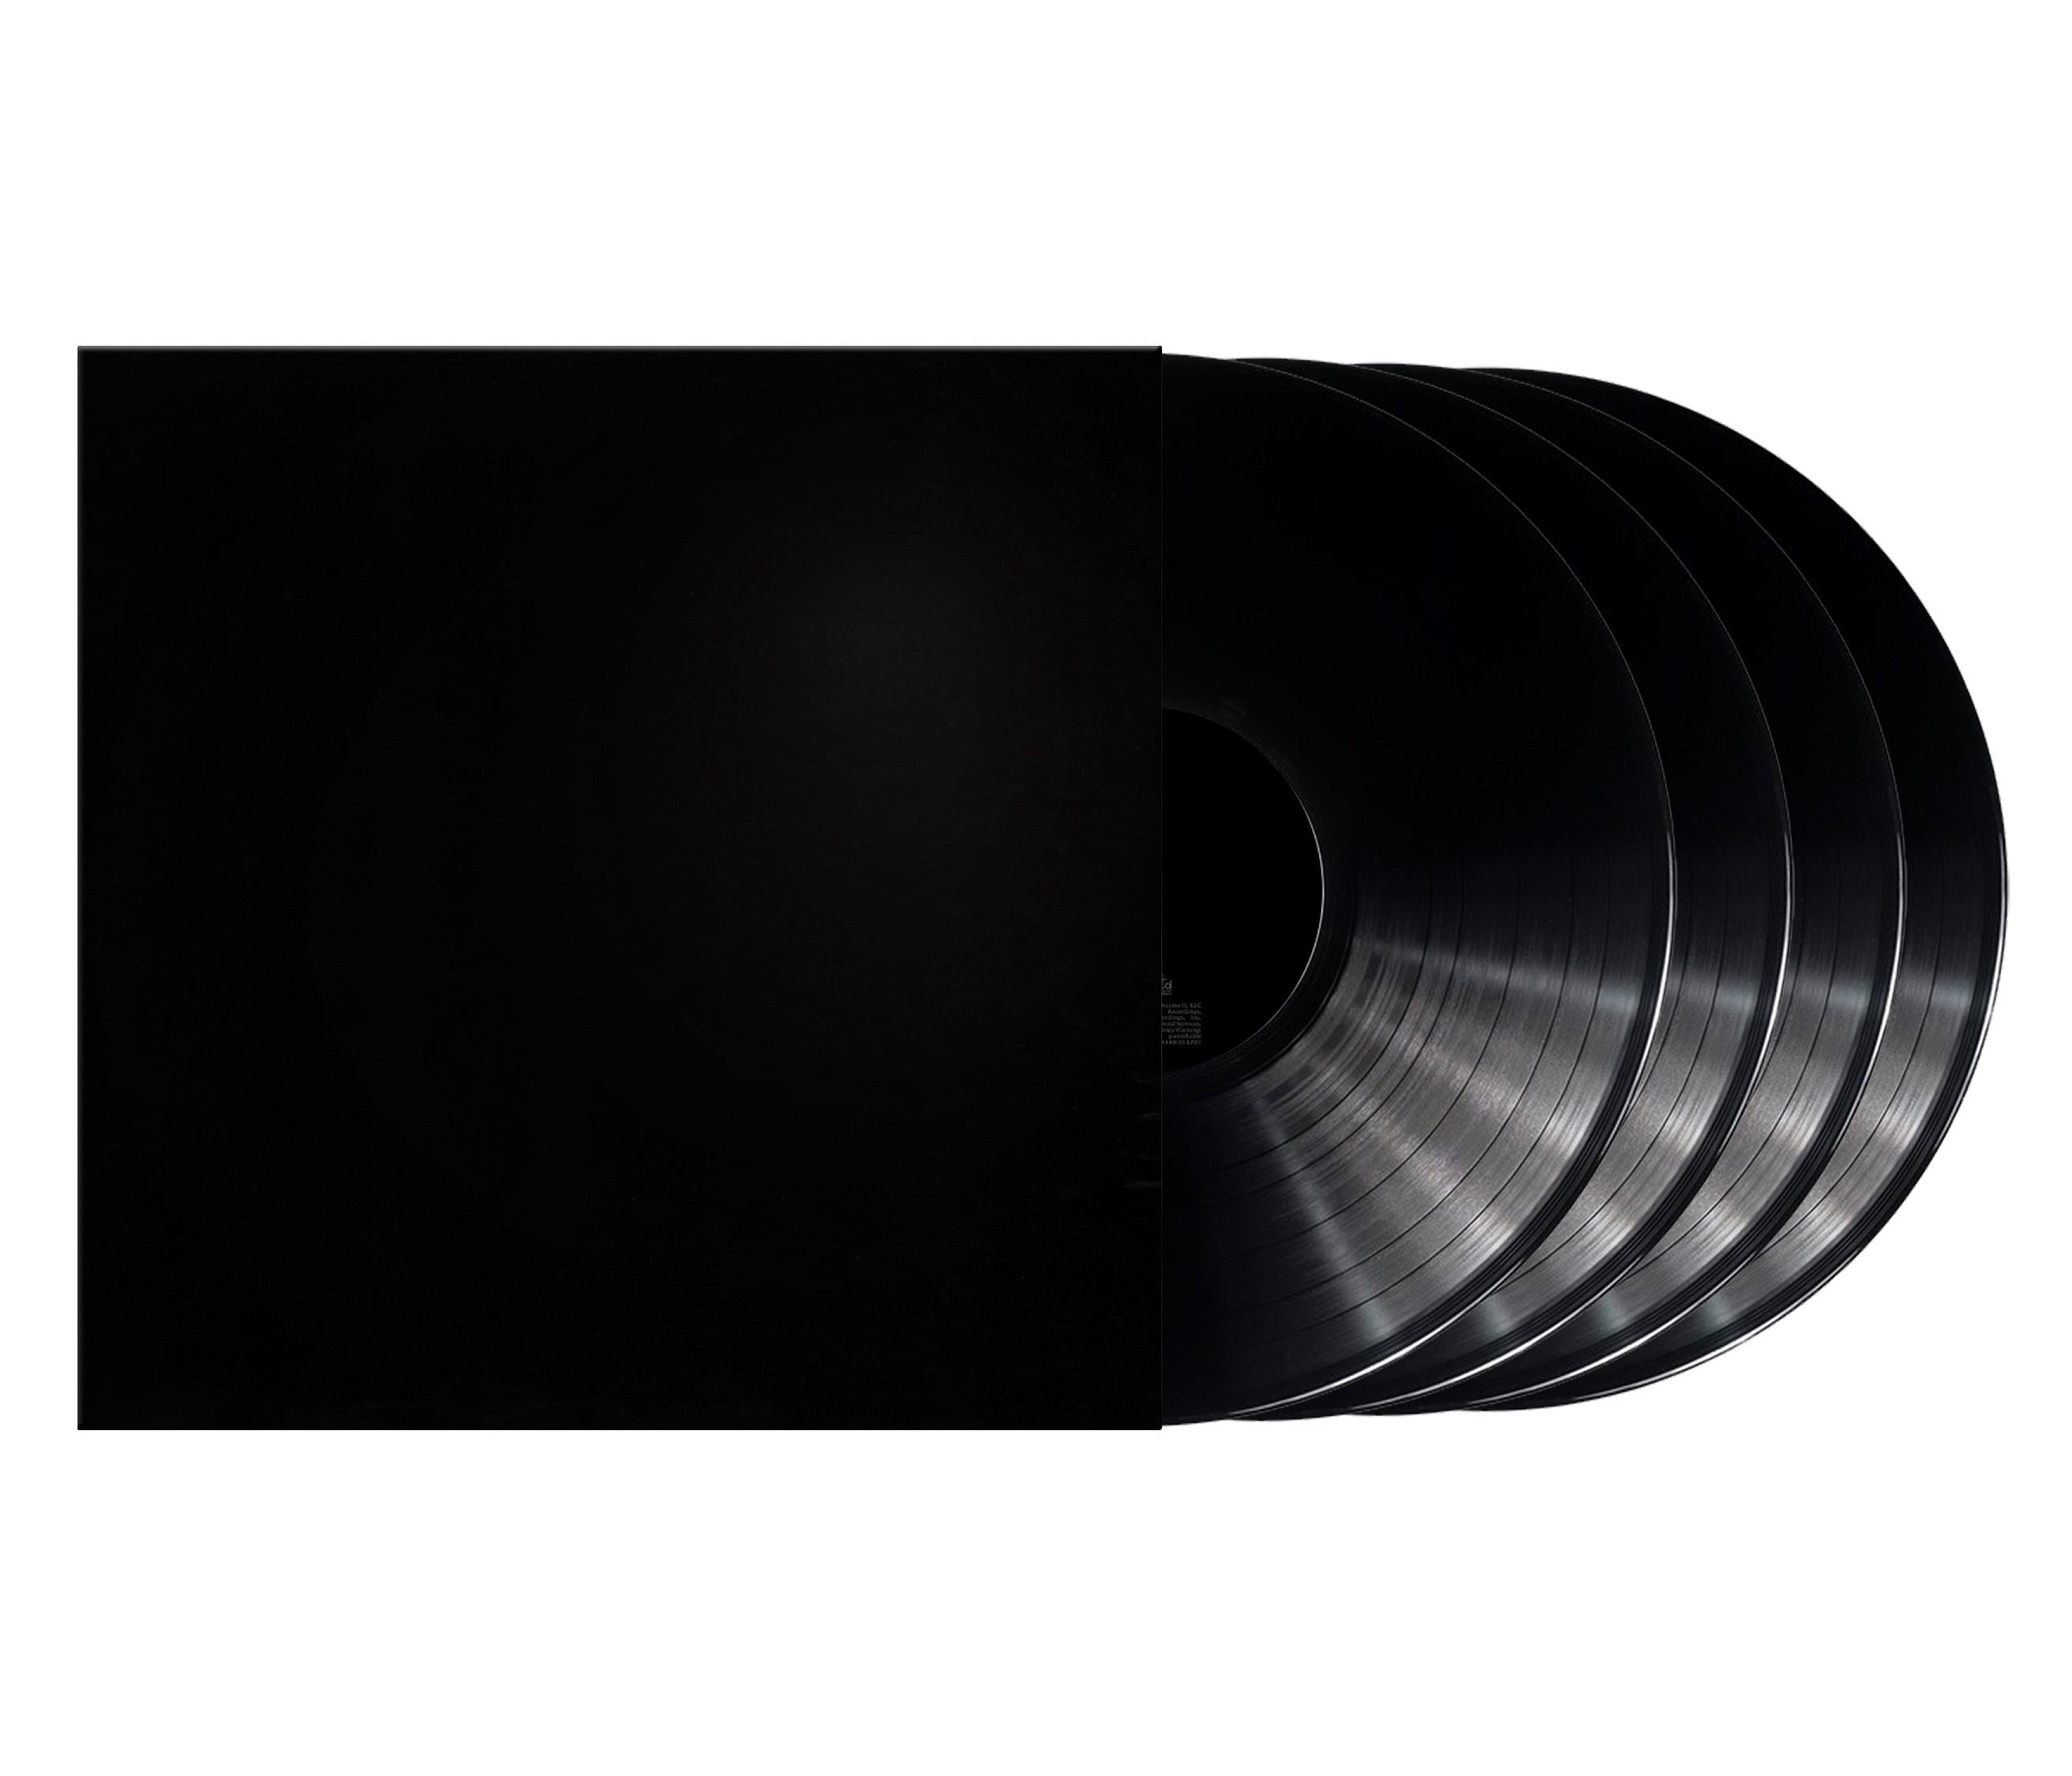 Kanye West | Donda [Explicit Content] (Boxed Set, Deluxe Edition) (4 Lp's) | Vinyl - 0